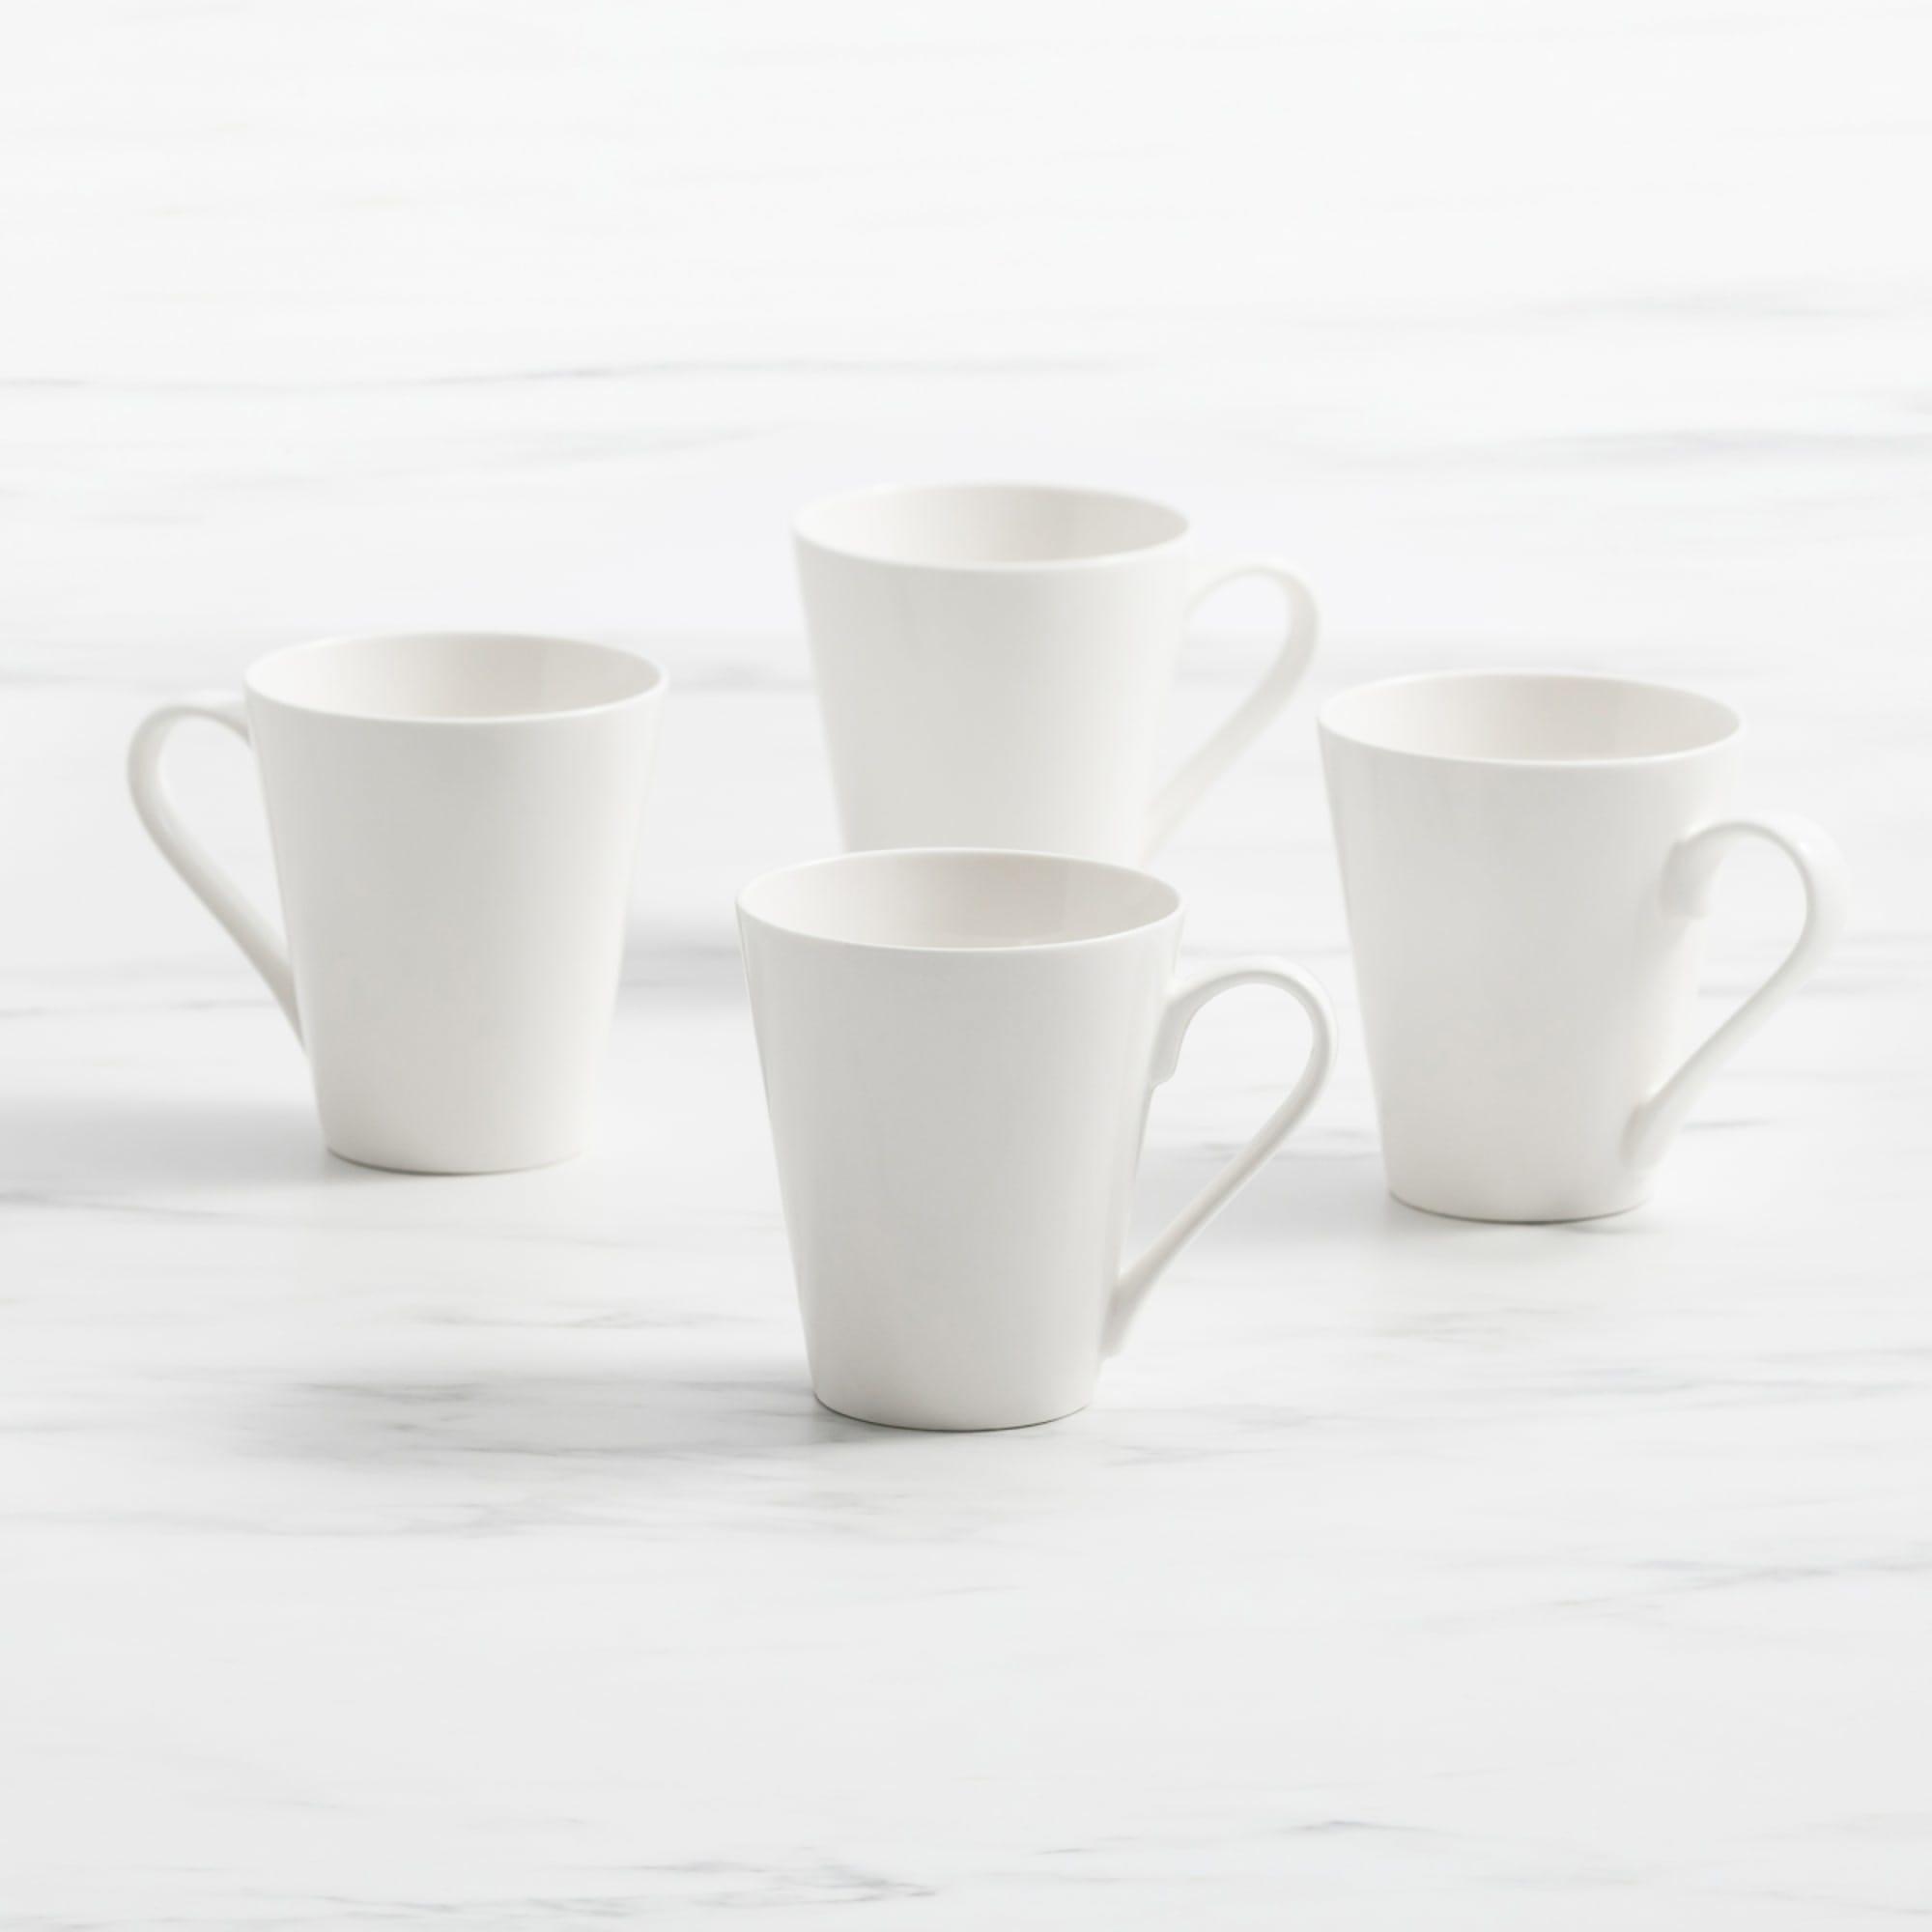 Salisbury & Co Classic Conical Mug 320ml Set of 4 White Image 1